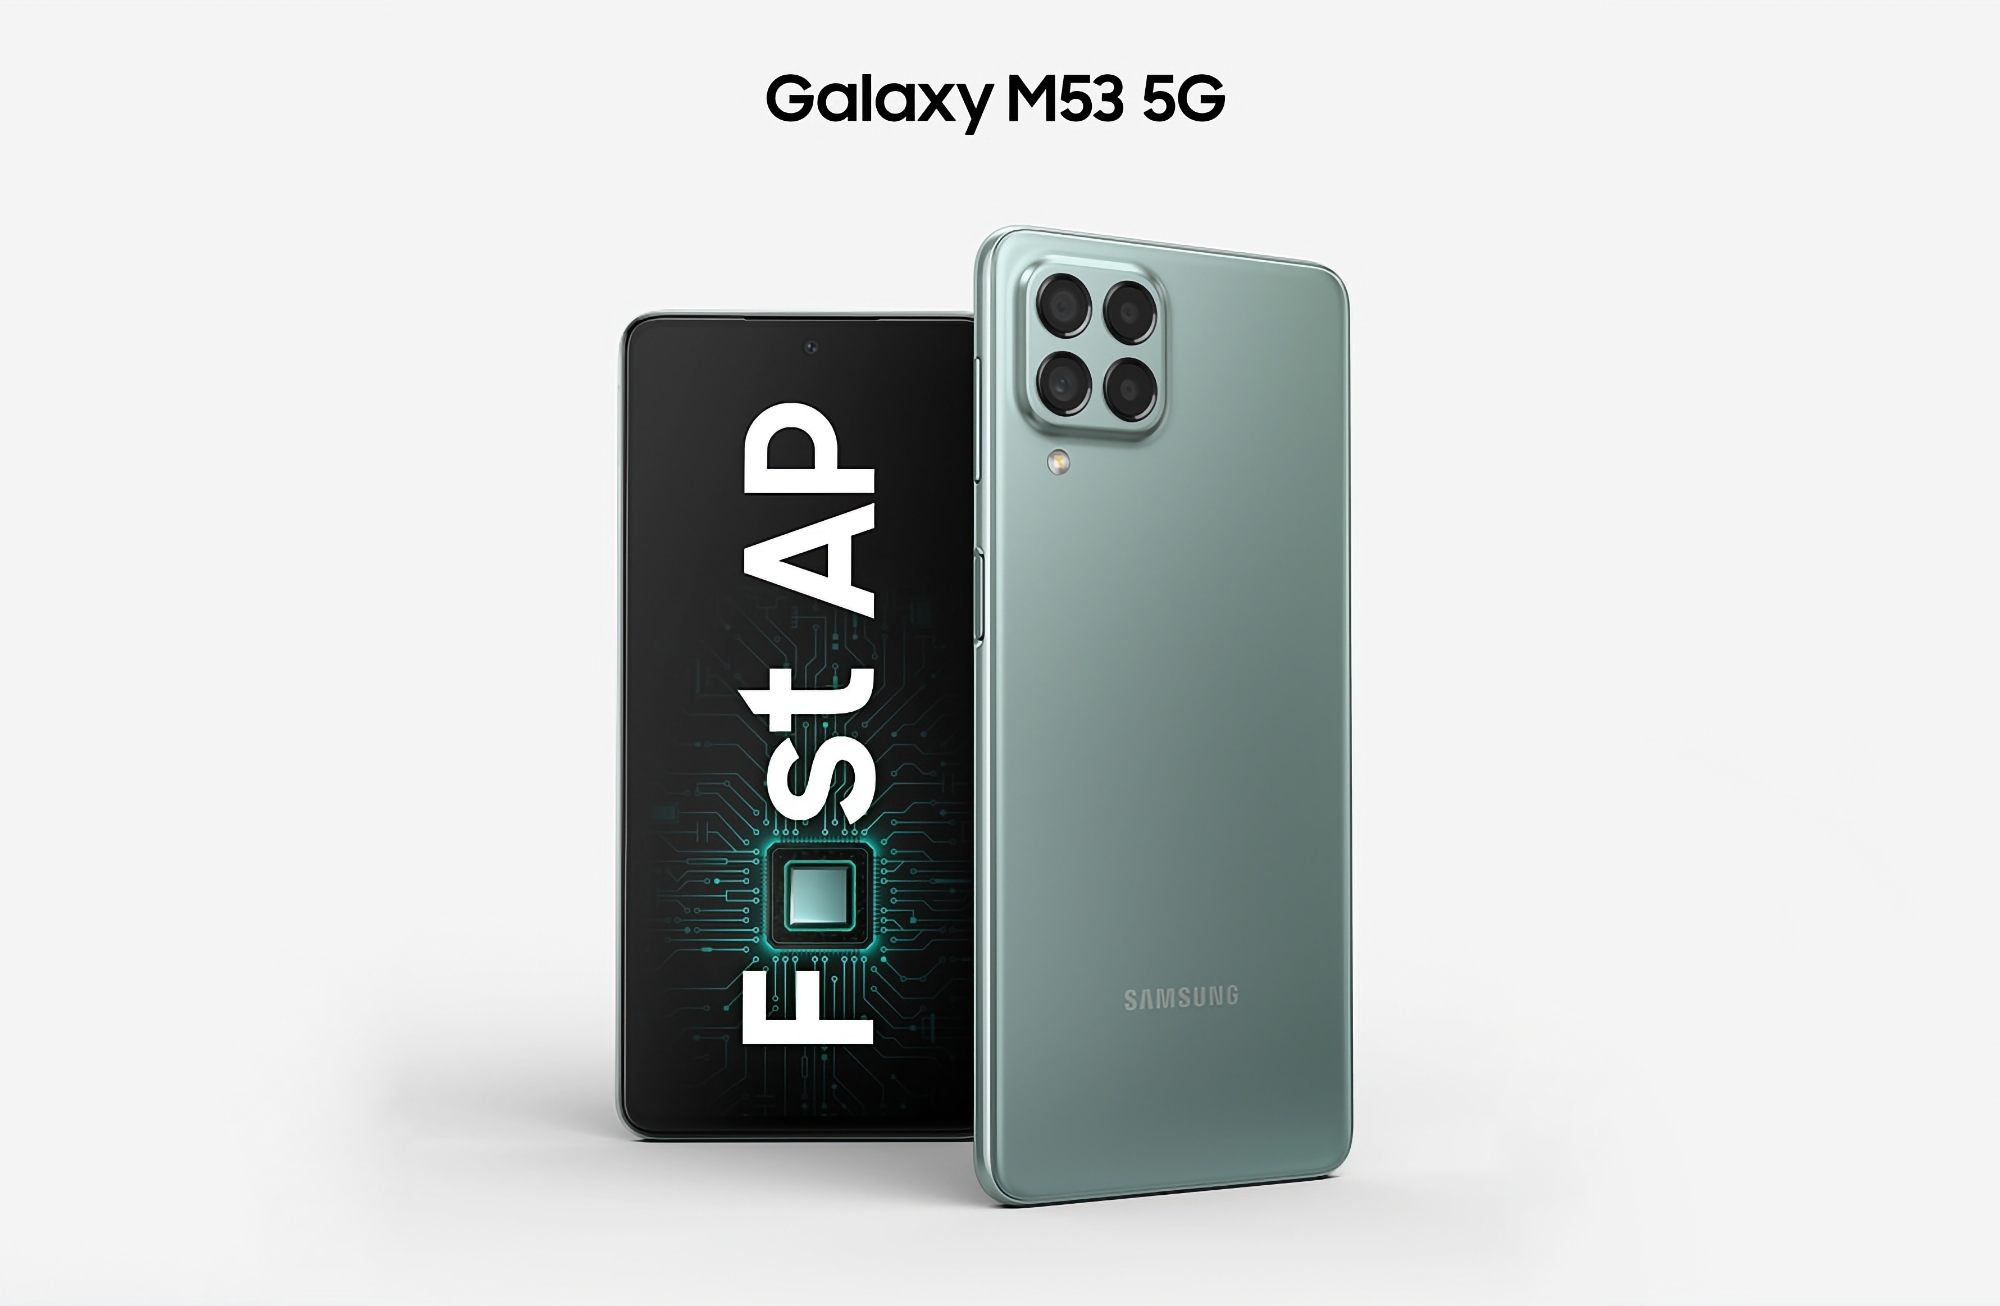 Le Samsung Galaxy M53 5G commence à recevoir Android 13 avec One UI 5.0 en Europe